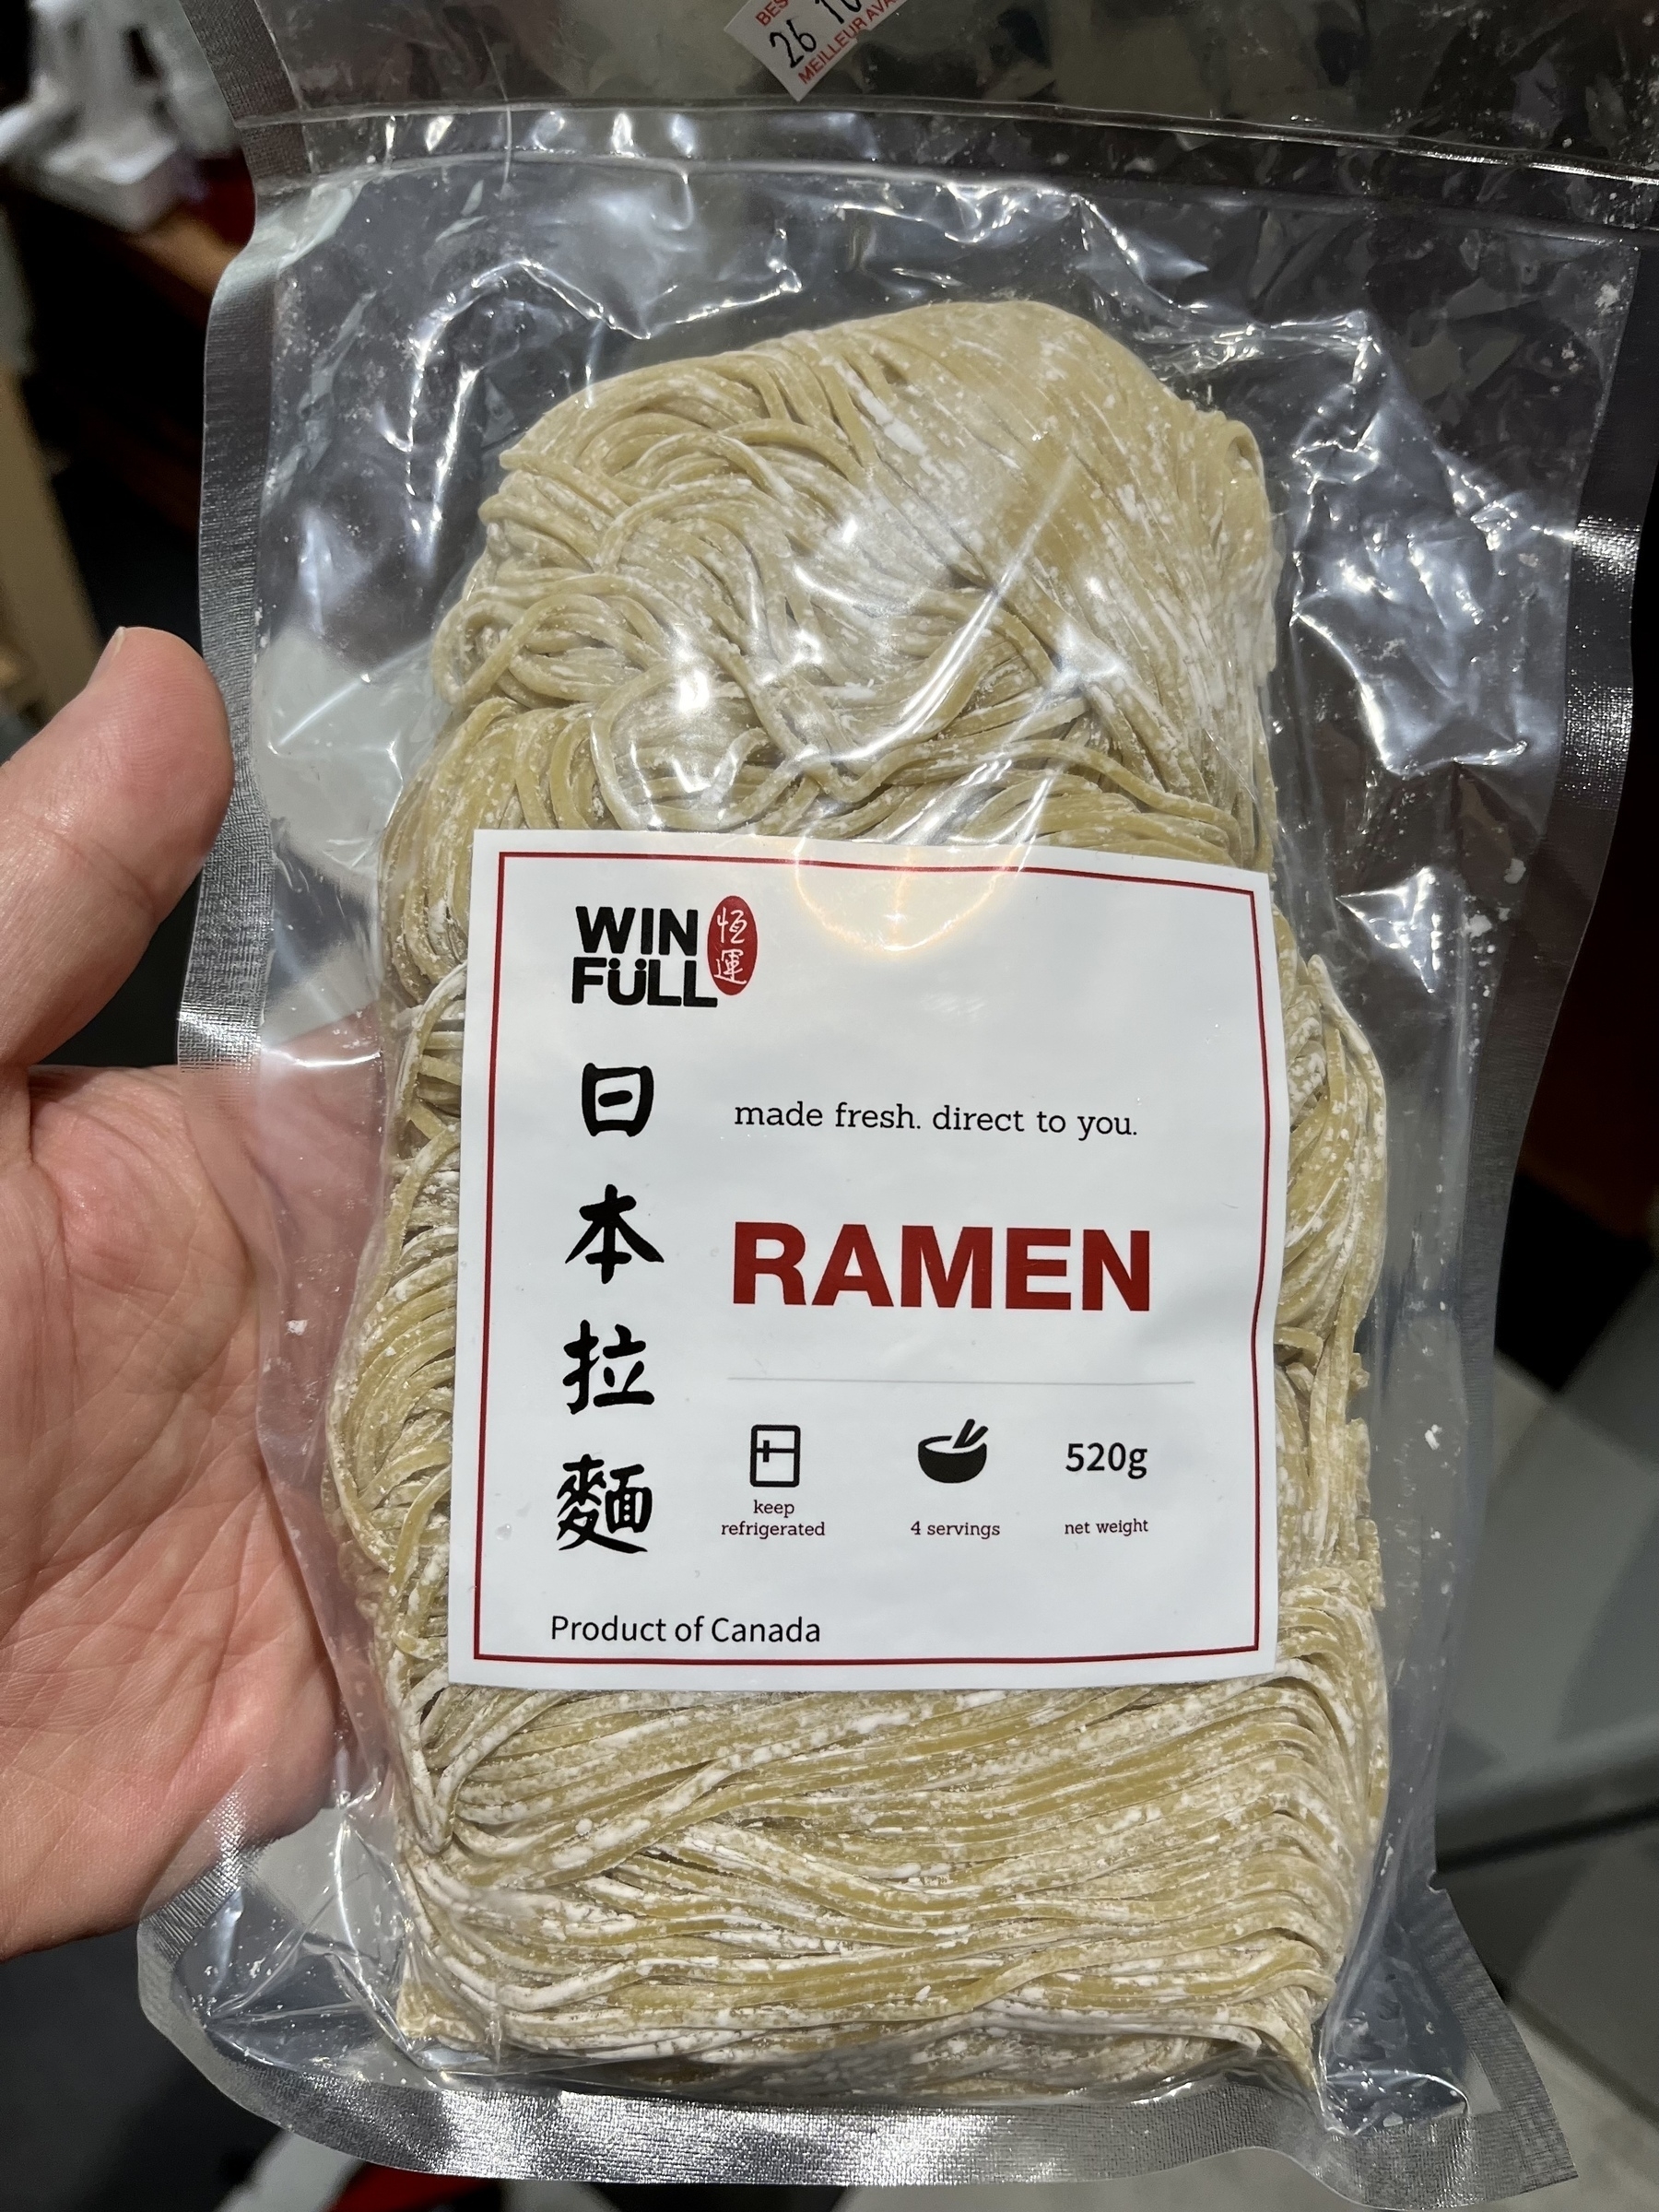 Win Full Ramen - front of package. 4 bundles of ramen